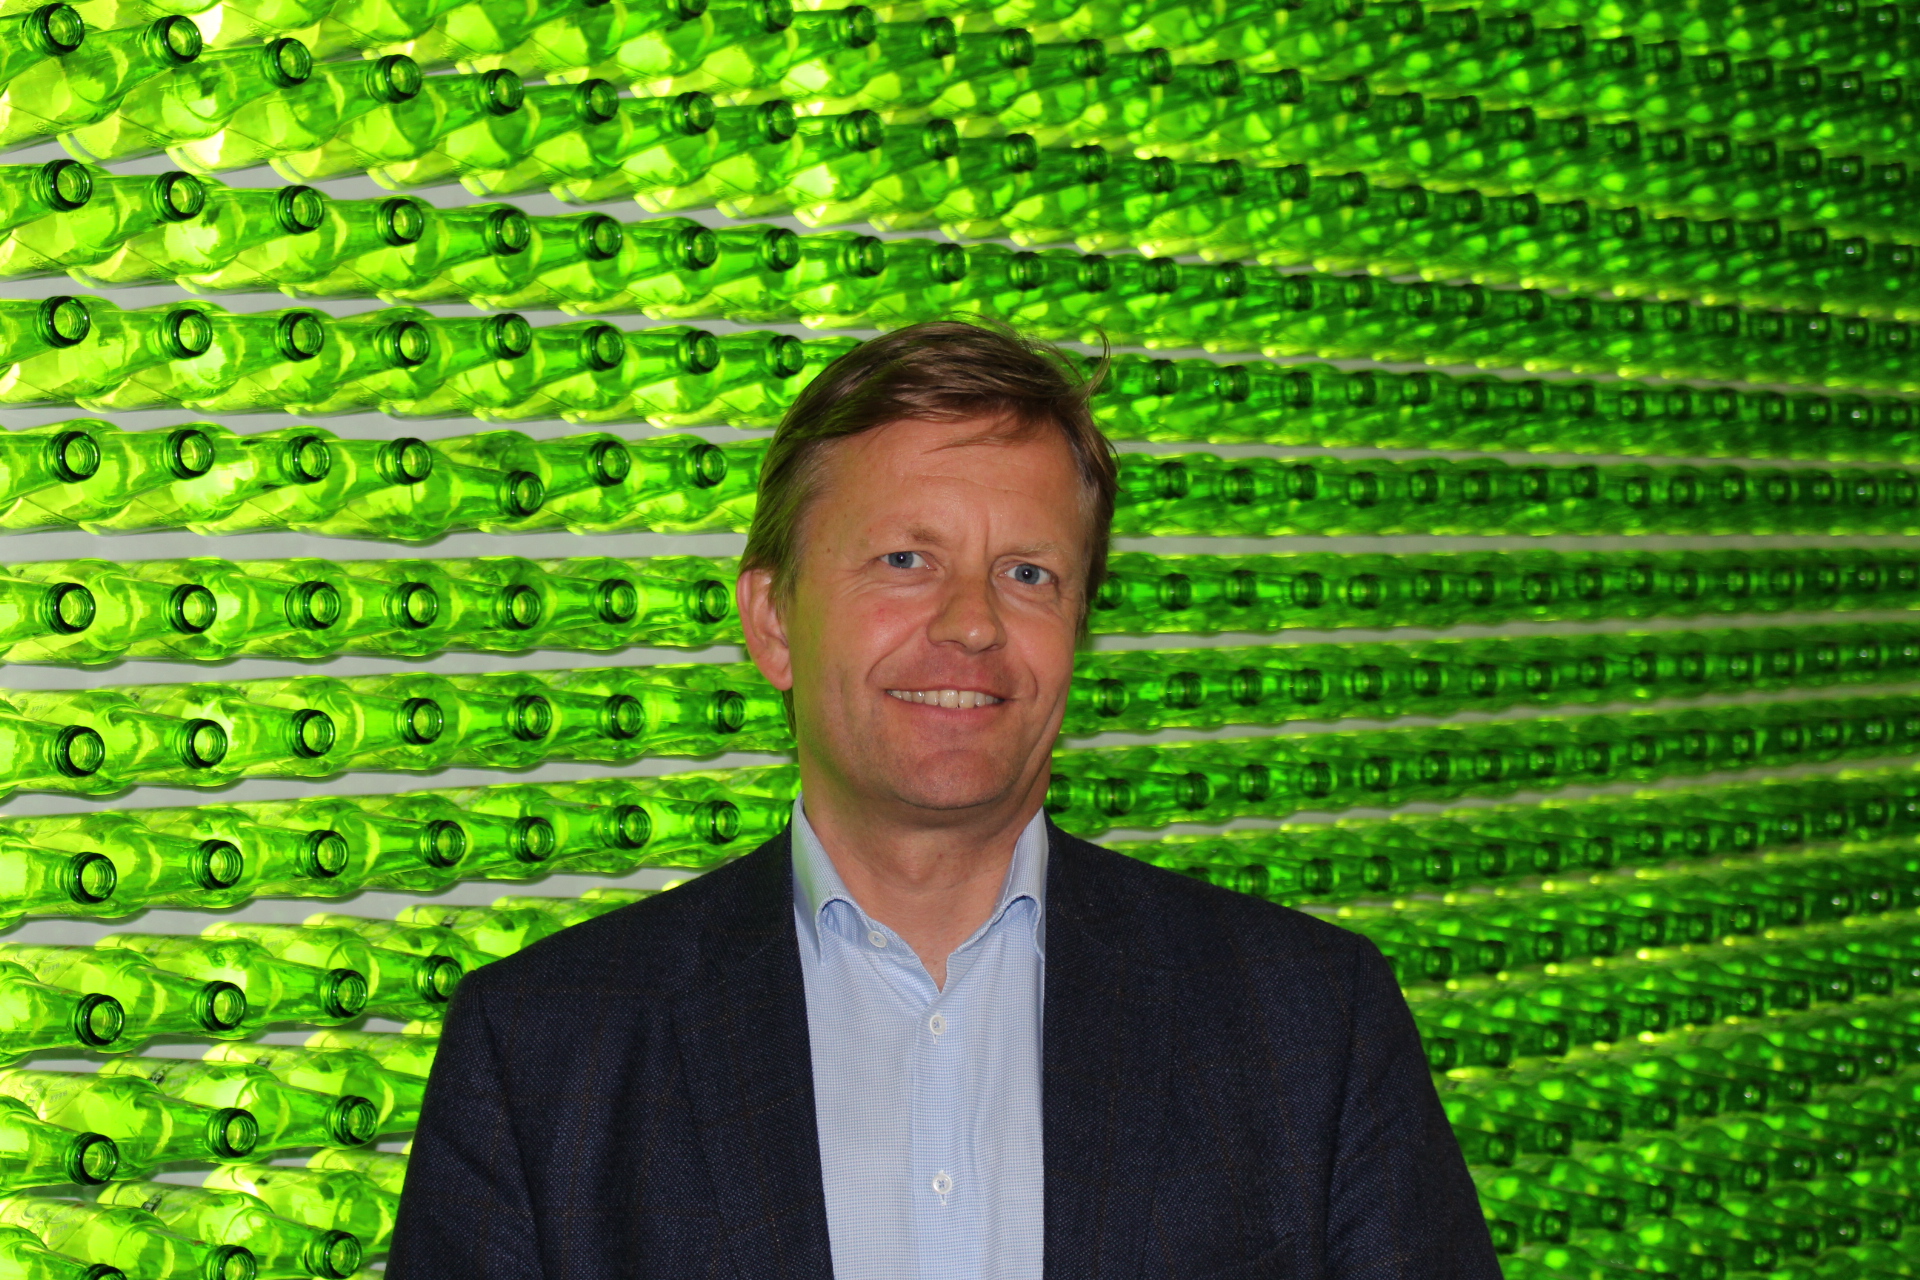 Incoming Heineken Ireland CEO Maarten Schuurman, who will succeed Maggie Timoney in the role